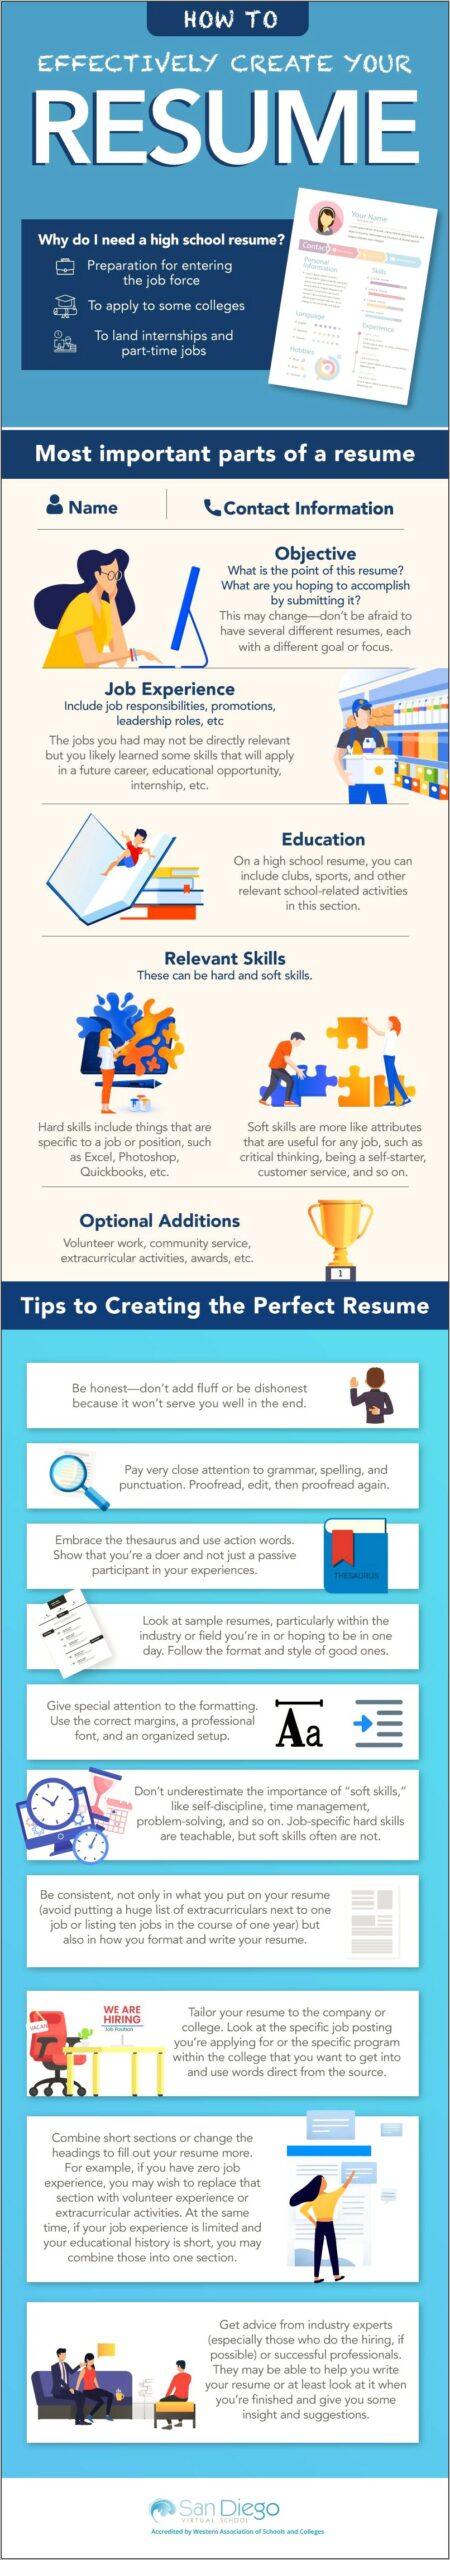 Best Way To Put Resume Online